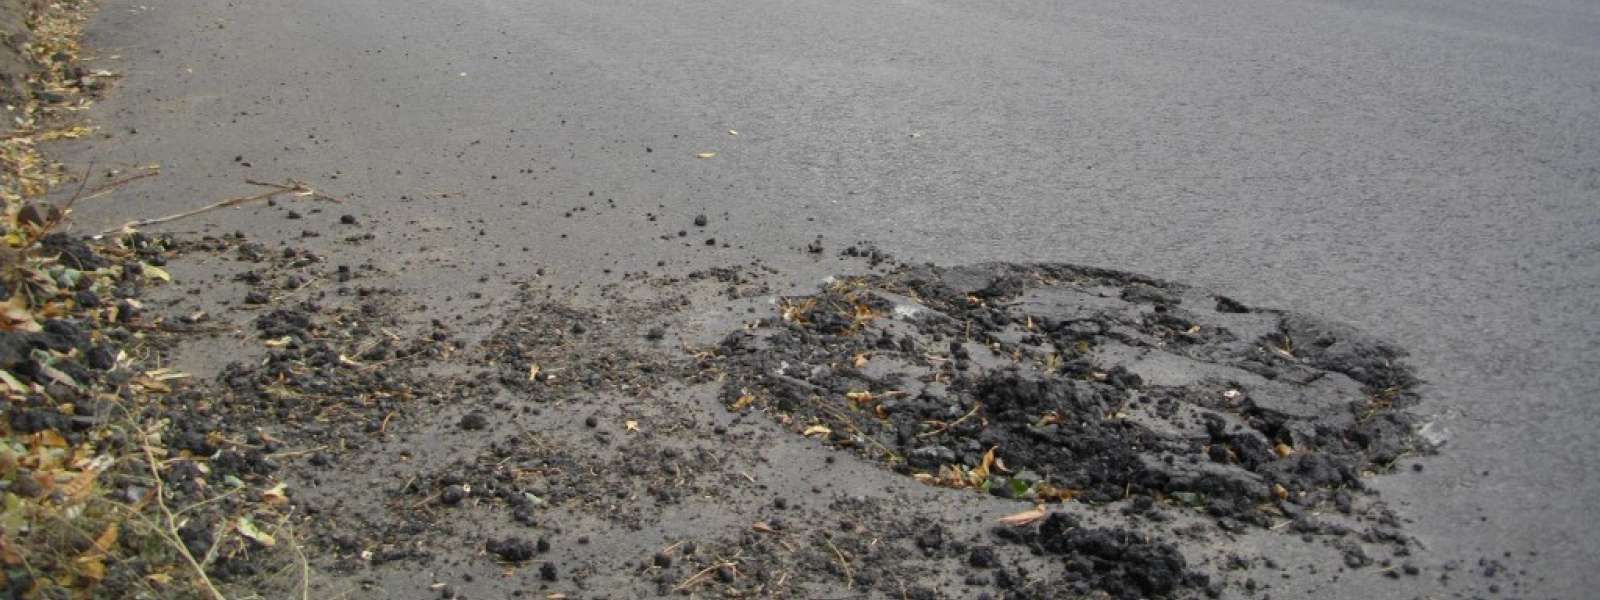 У Слов'янську трапився обурливий конфуз під час ремонту дороги